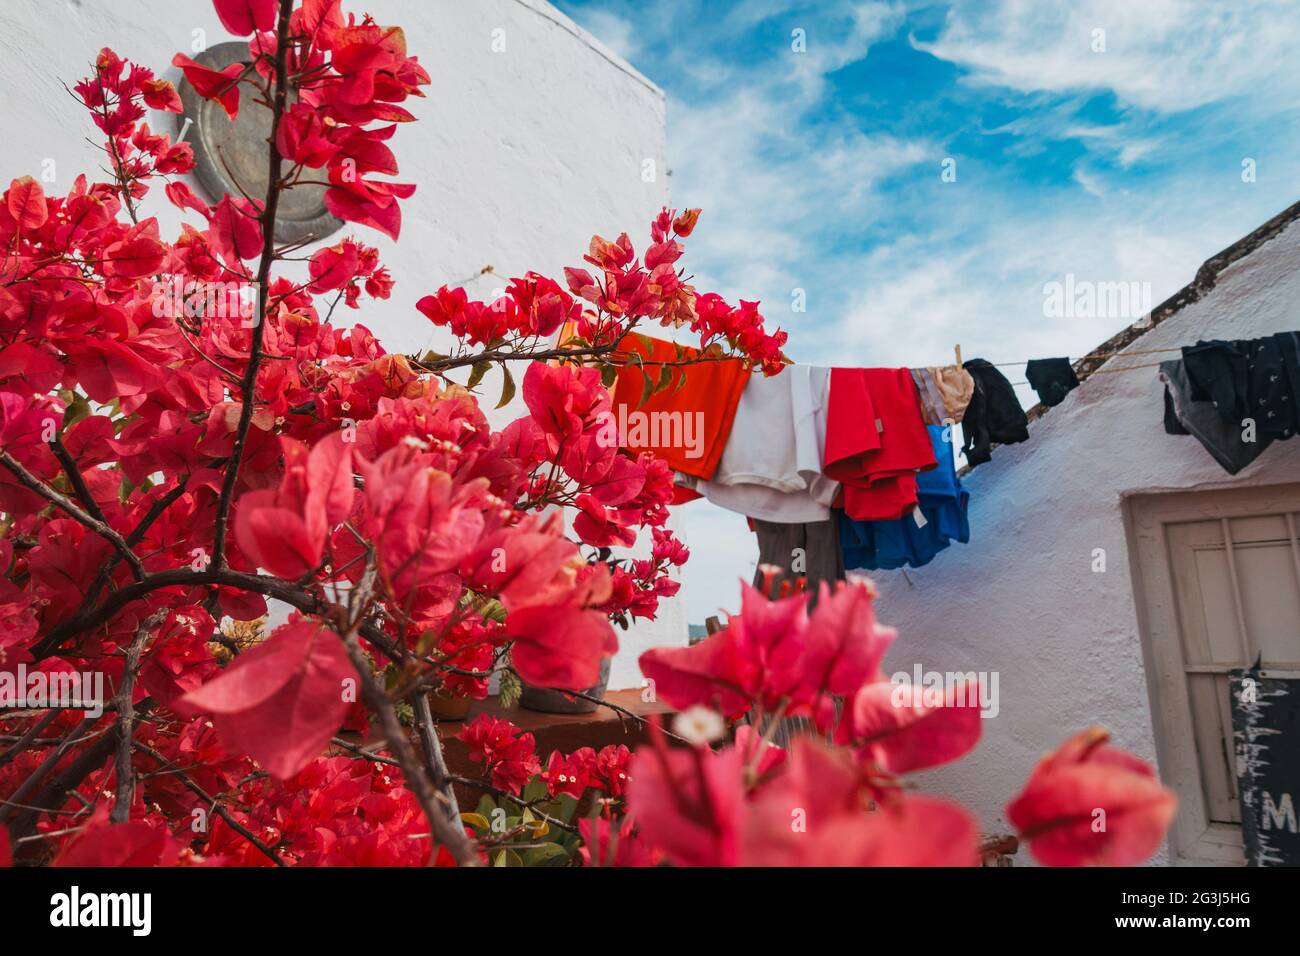 Rosa Bougainvillea Blumen wachsen auf einer Dachterrasse in Córdoba, Spanien an einem schönen klaren Nachmittag, während einige Wäsche hängt, um auf der Linie zu trocknen Stockfoto